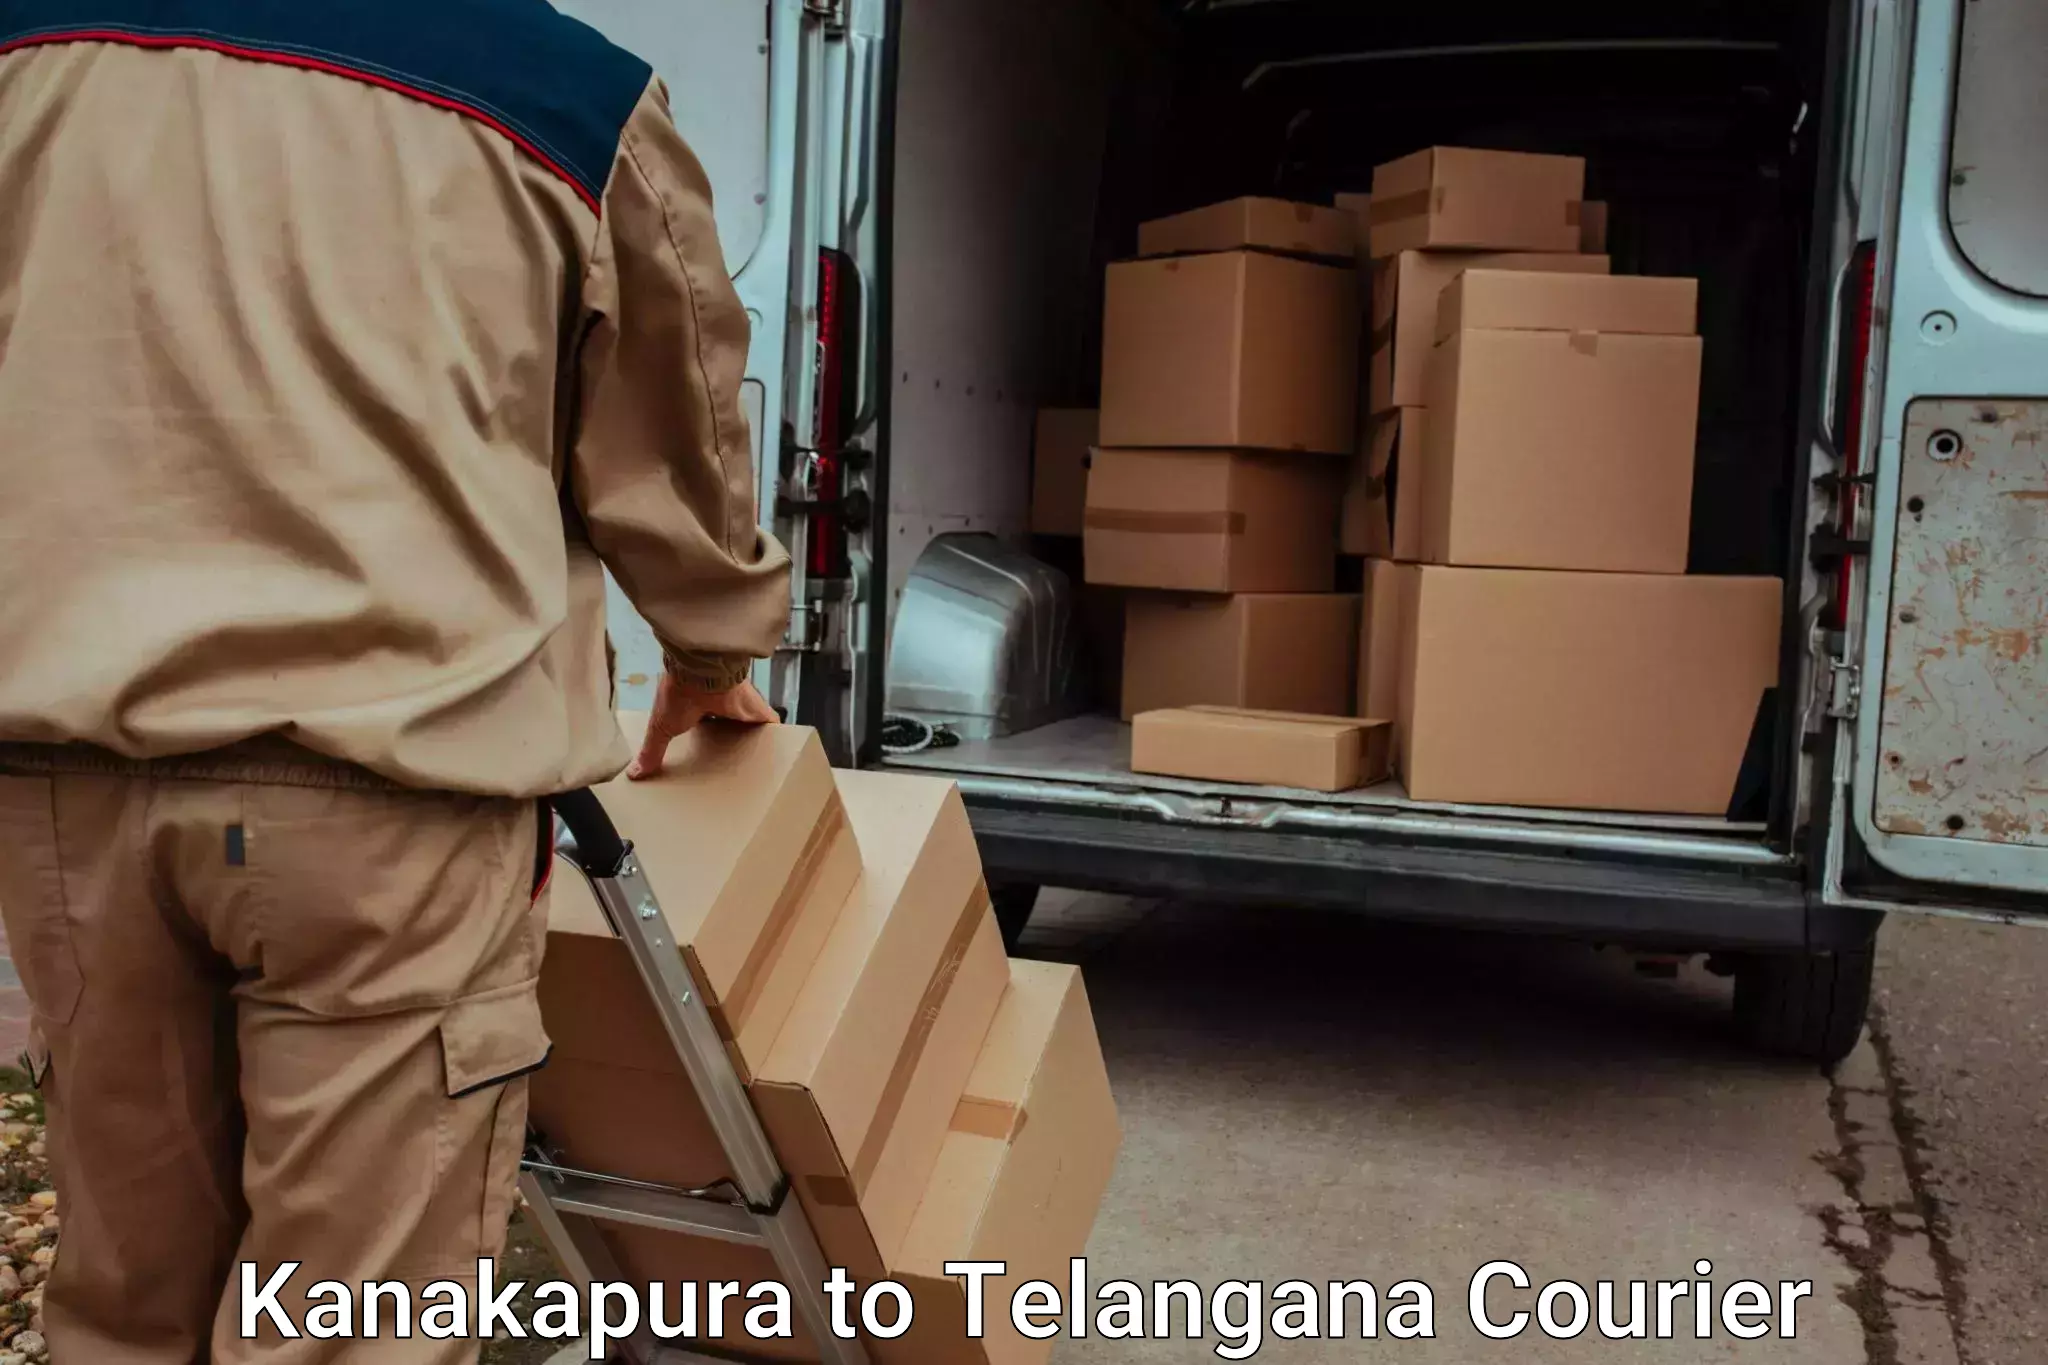 Urgent luggage shipment in Kanakapura to Mancherial